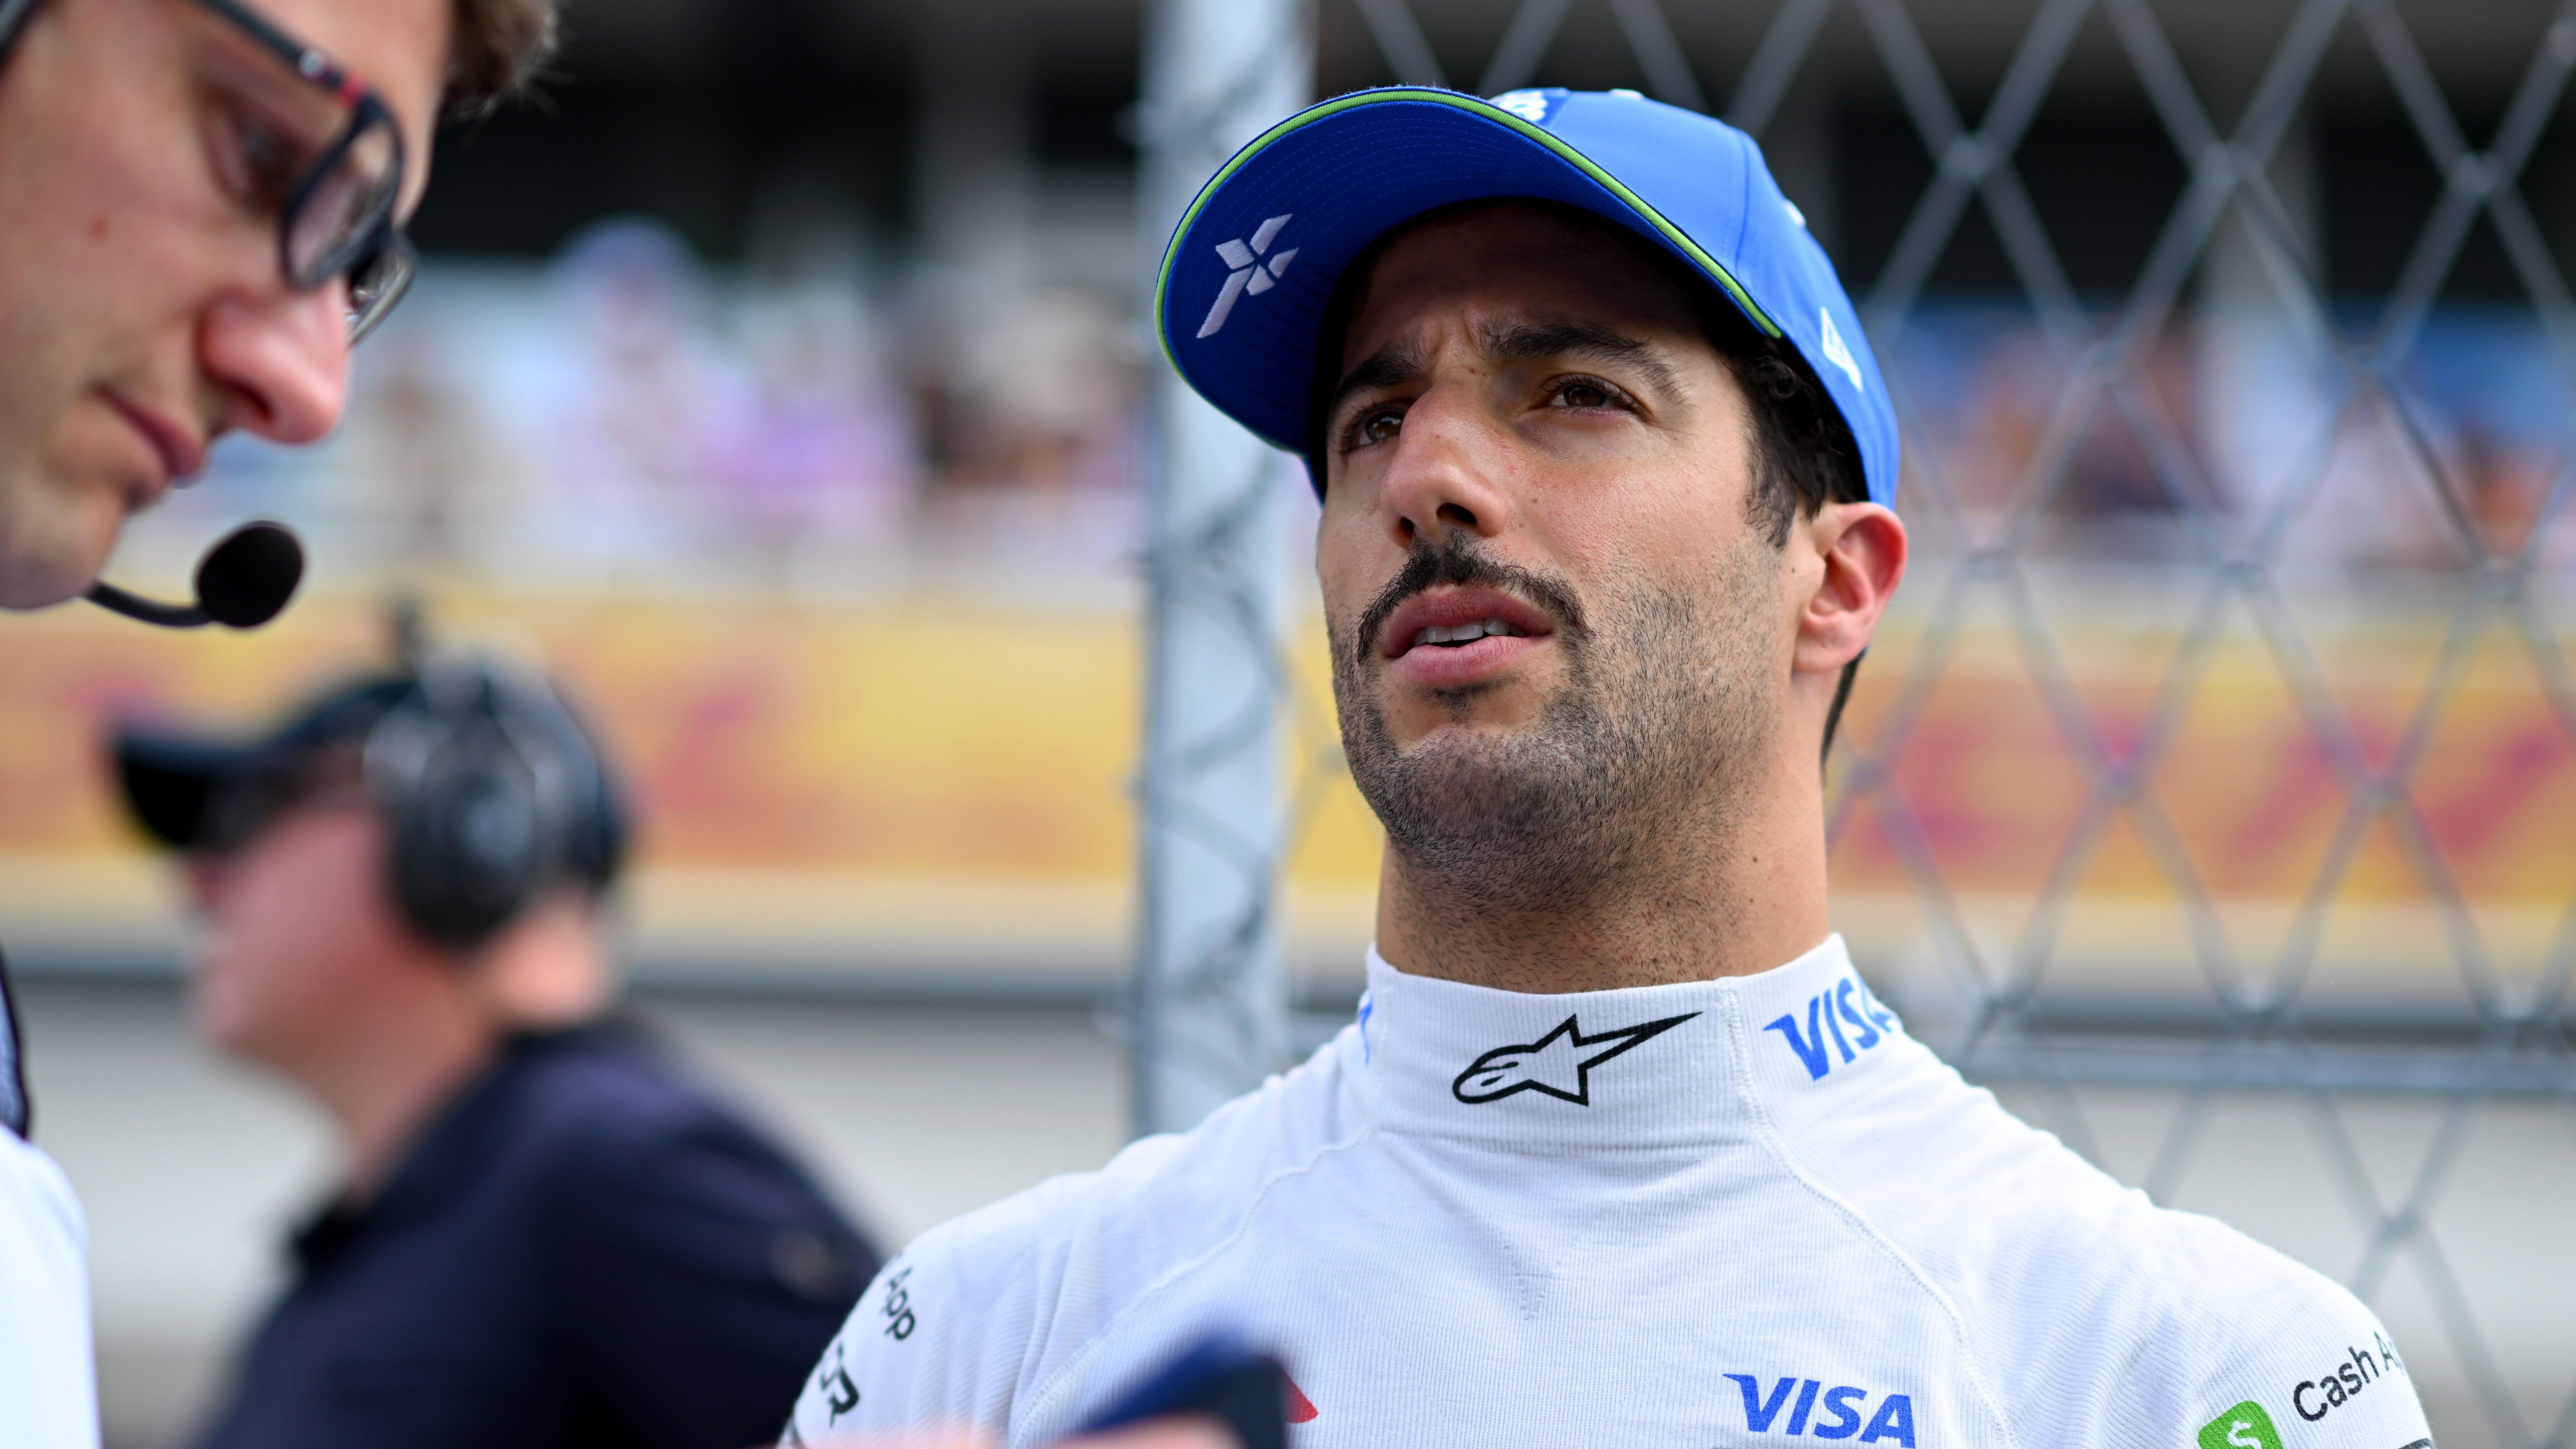 <strong>Verlierer: Daniel Ricciardo</strong><br>Deshalb gehört der Australier auch zu den Verlierern. Im Sprint überraschte er noch positiv mit Platz vier, im Rennen konnte er die gute Leistung nicht bestätigen. Es kristallisiert sich mehr und mehr heraus, dass er 2024 nicht um einen möglichen Platz bei Red Bull fährt, sondern um seine Zukunft. Er muss endlich konstant liefern.